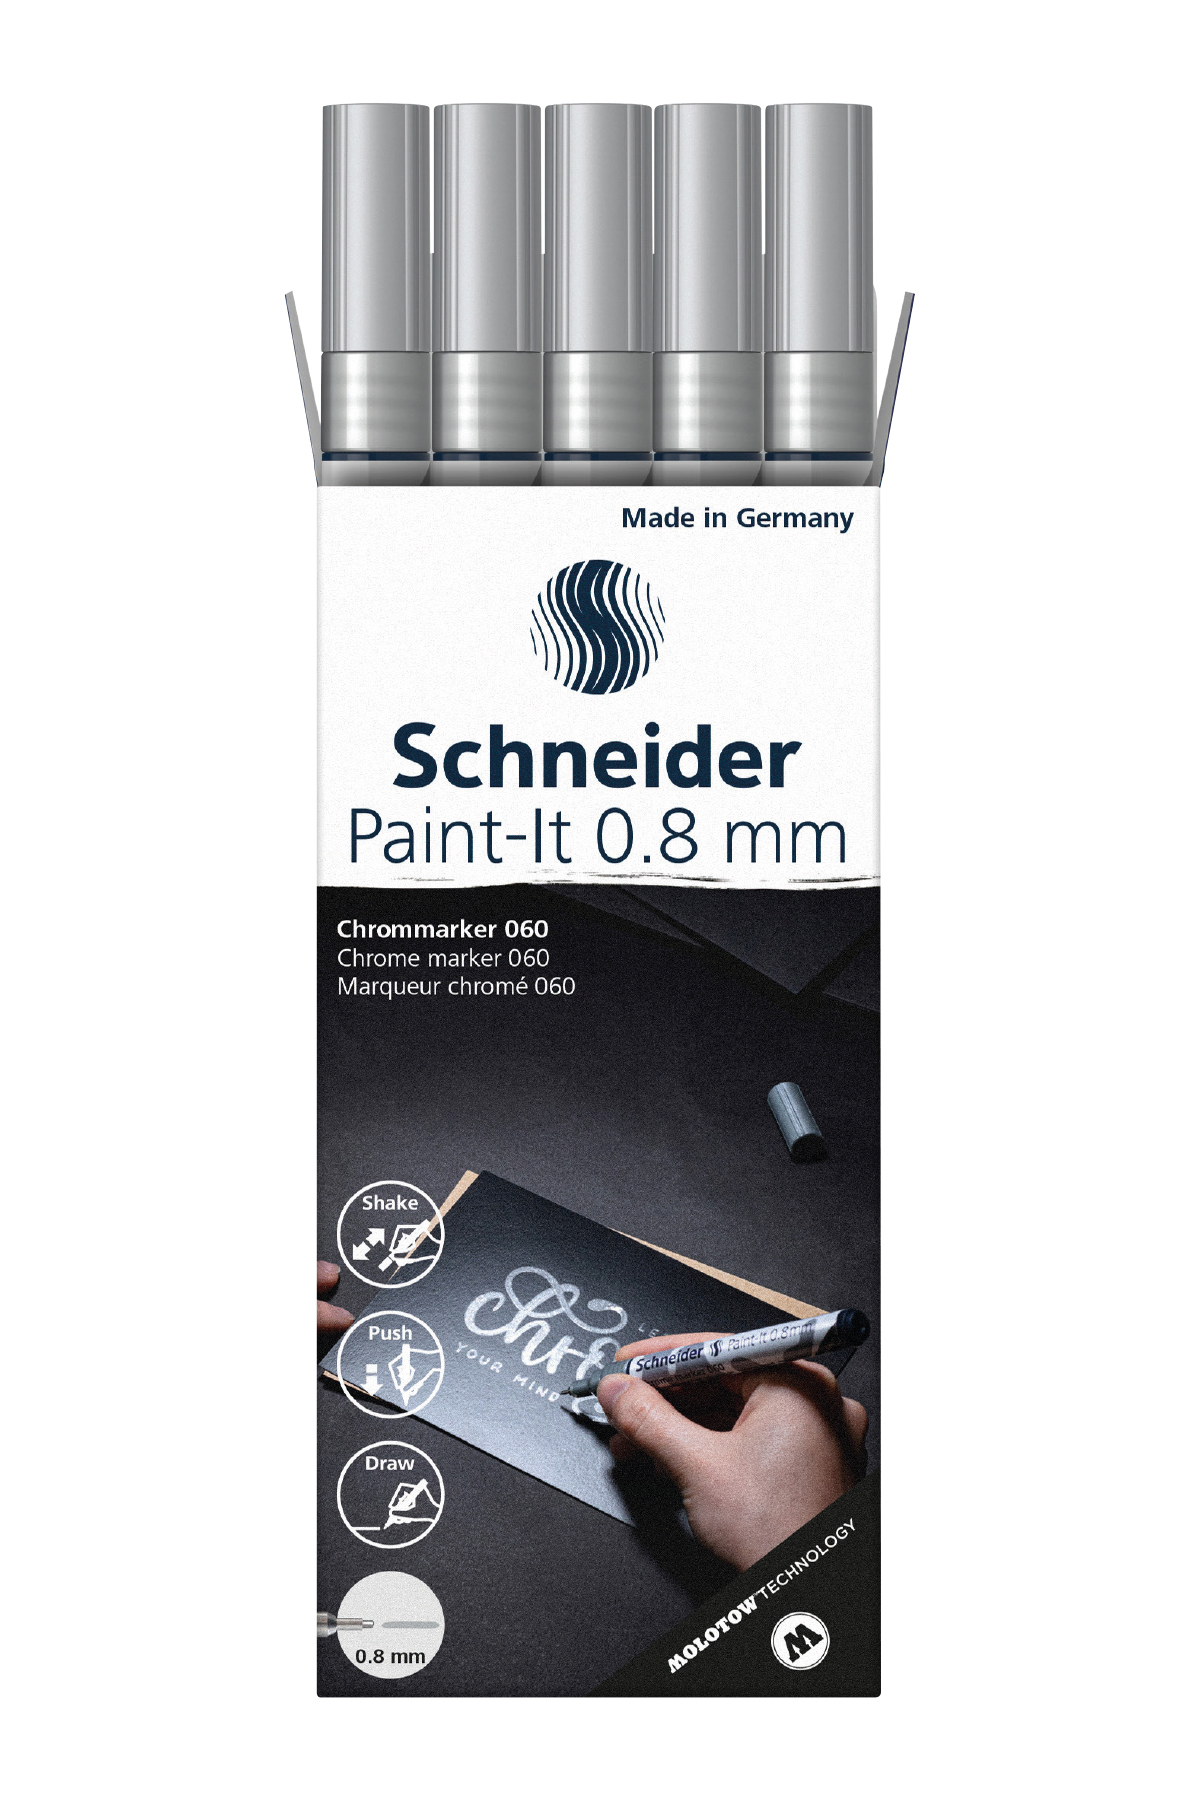 lencre-du-marqueur-schneider-chrome-paint-it-060-et-061-est-tres-couvrante-permanente-et-resistante-aux-uv.2011.jpg